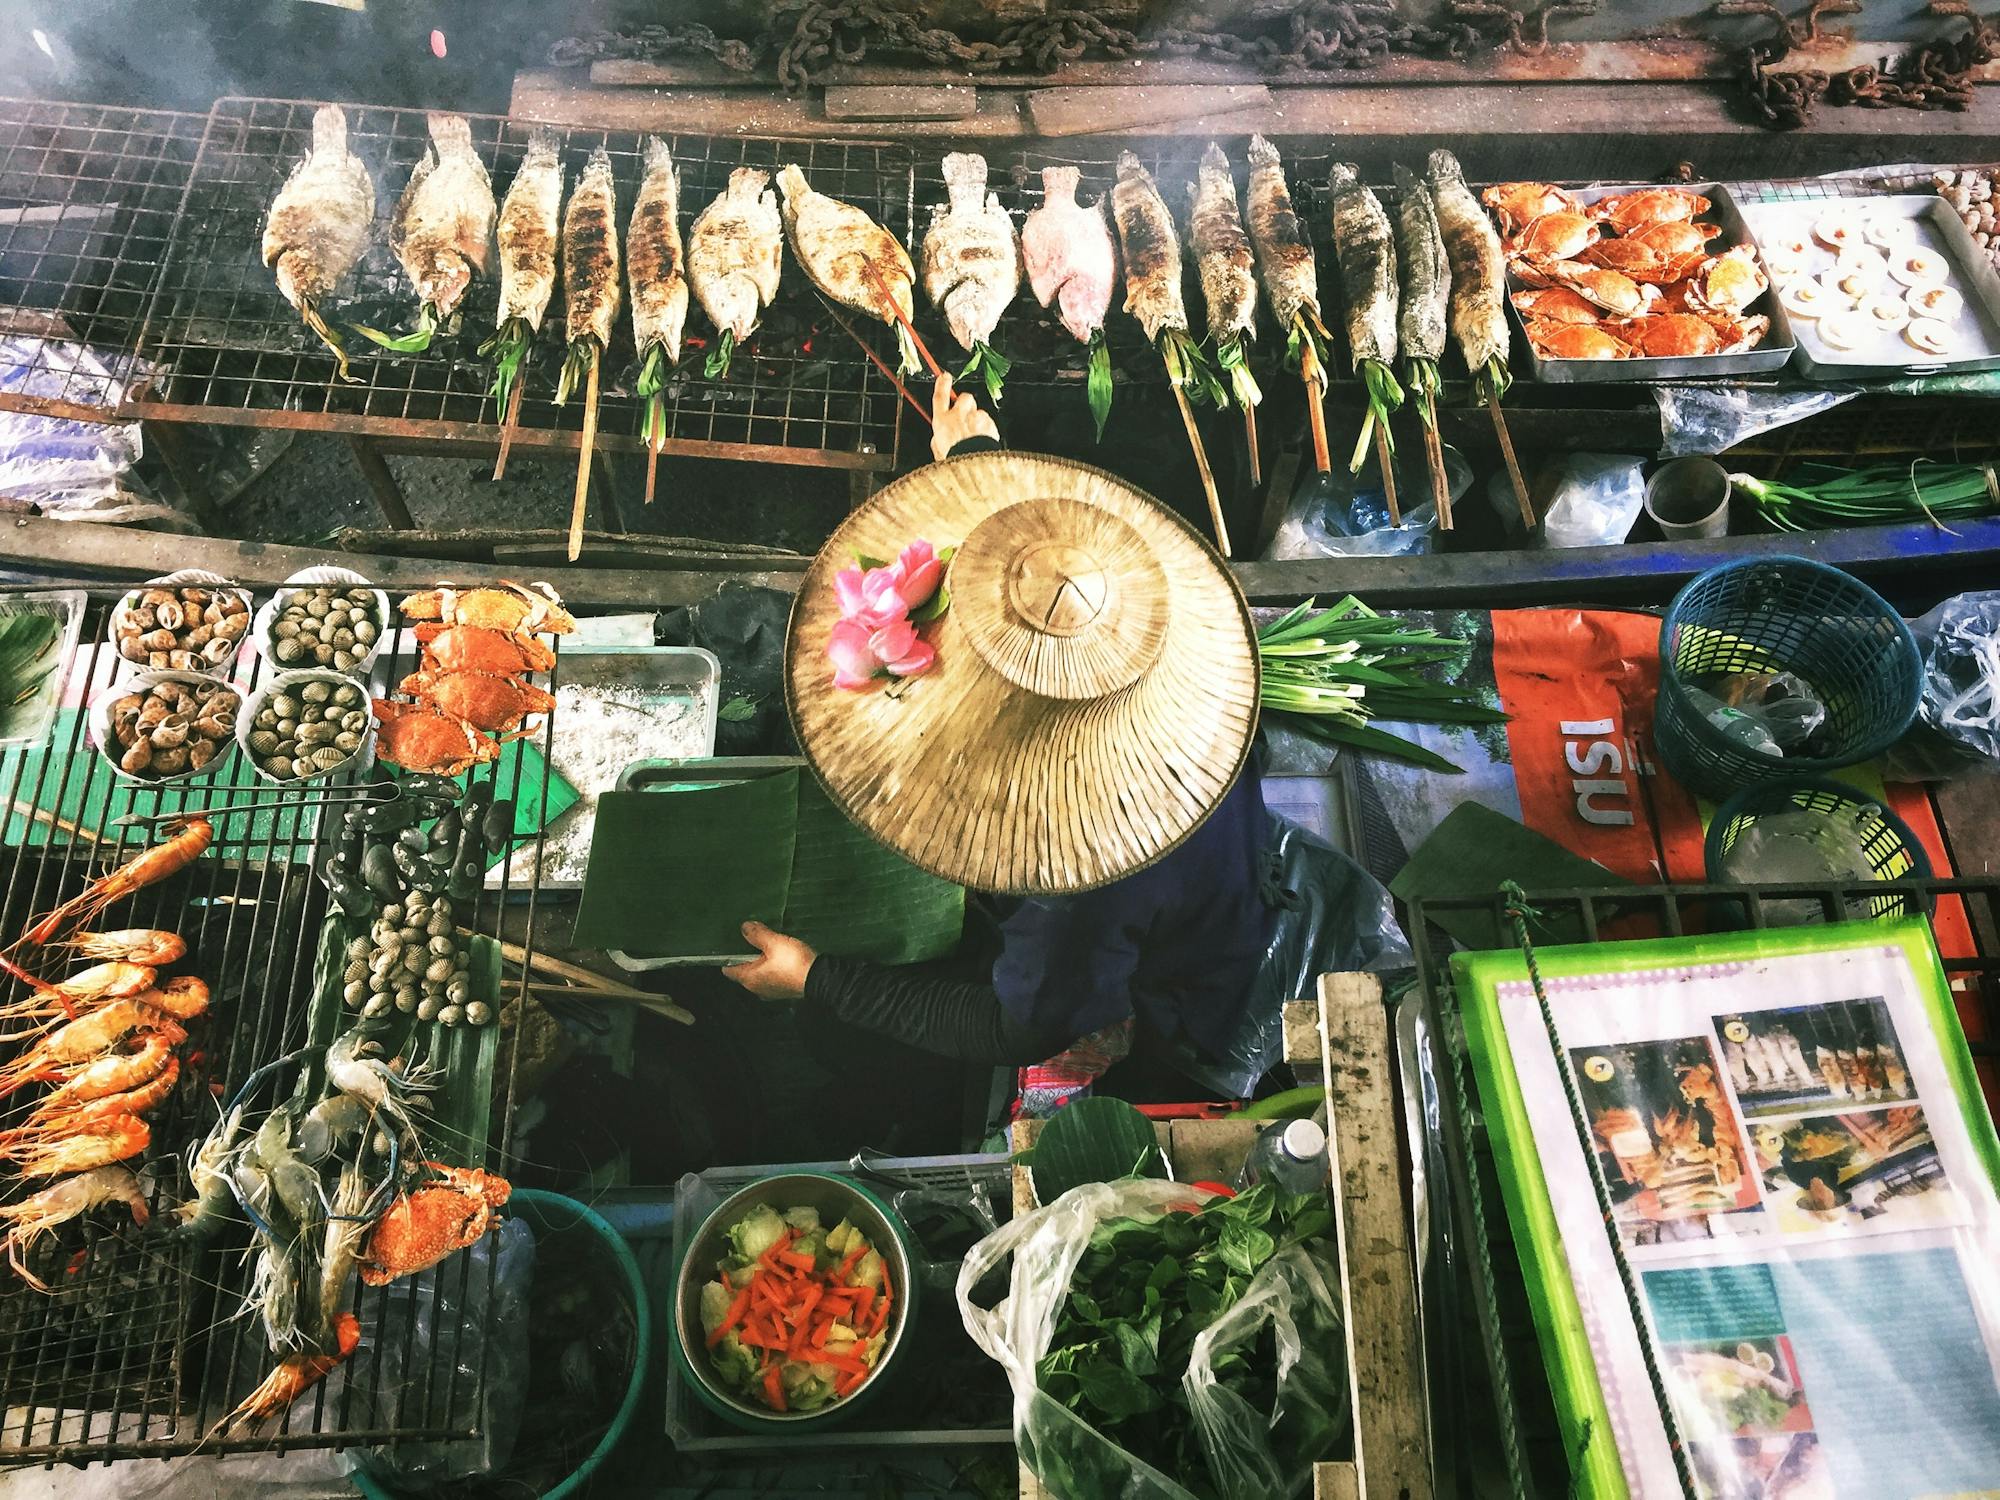 Kobieta nosi tajski kapelusz ze słomy i przygotowuje tajskie specjały: ryby i owoce morza są grillowane, a świeże warzywa są krojone.